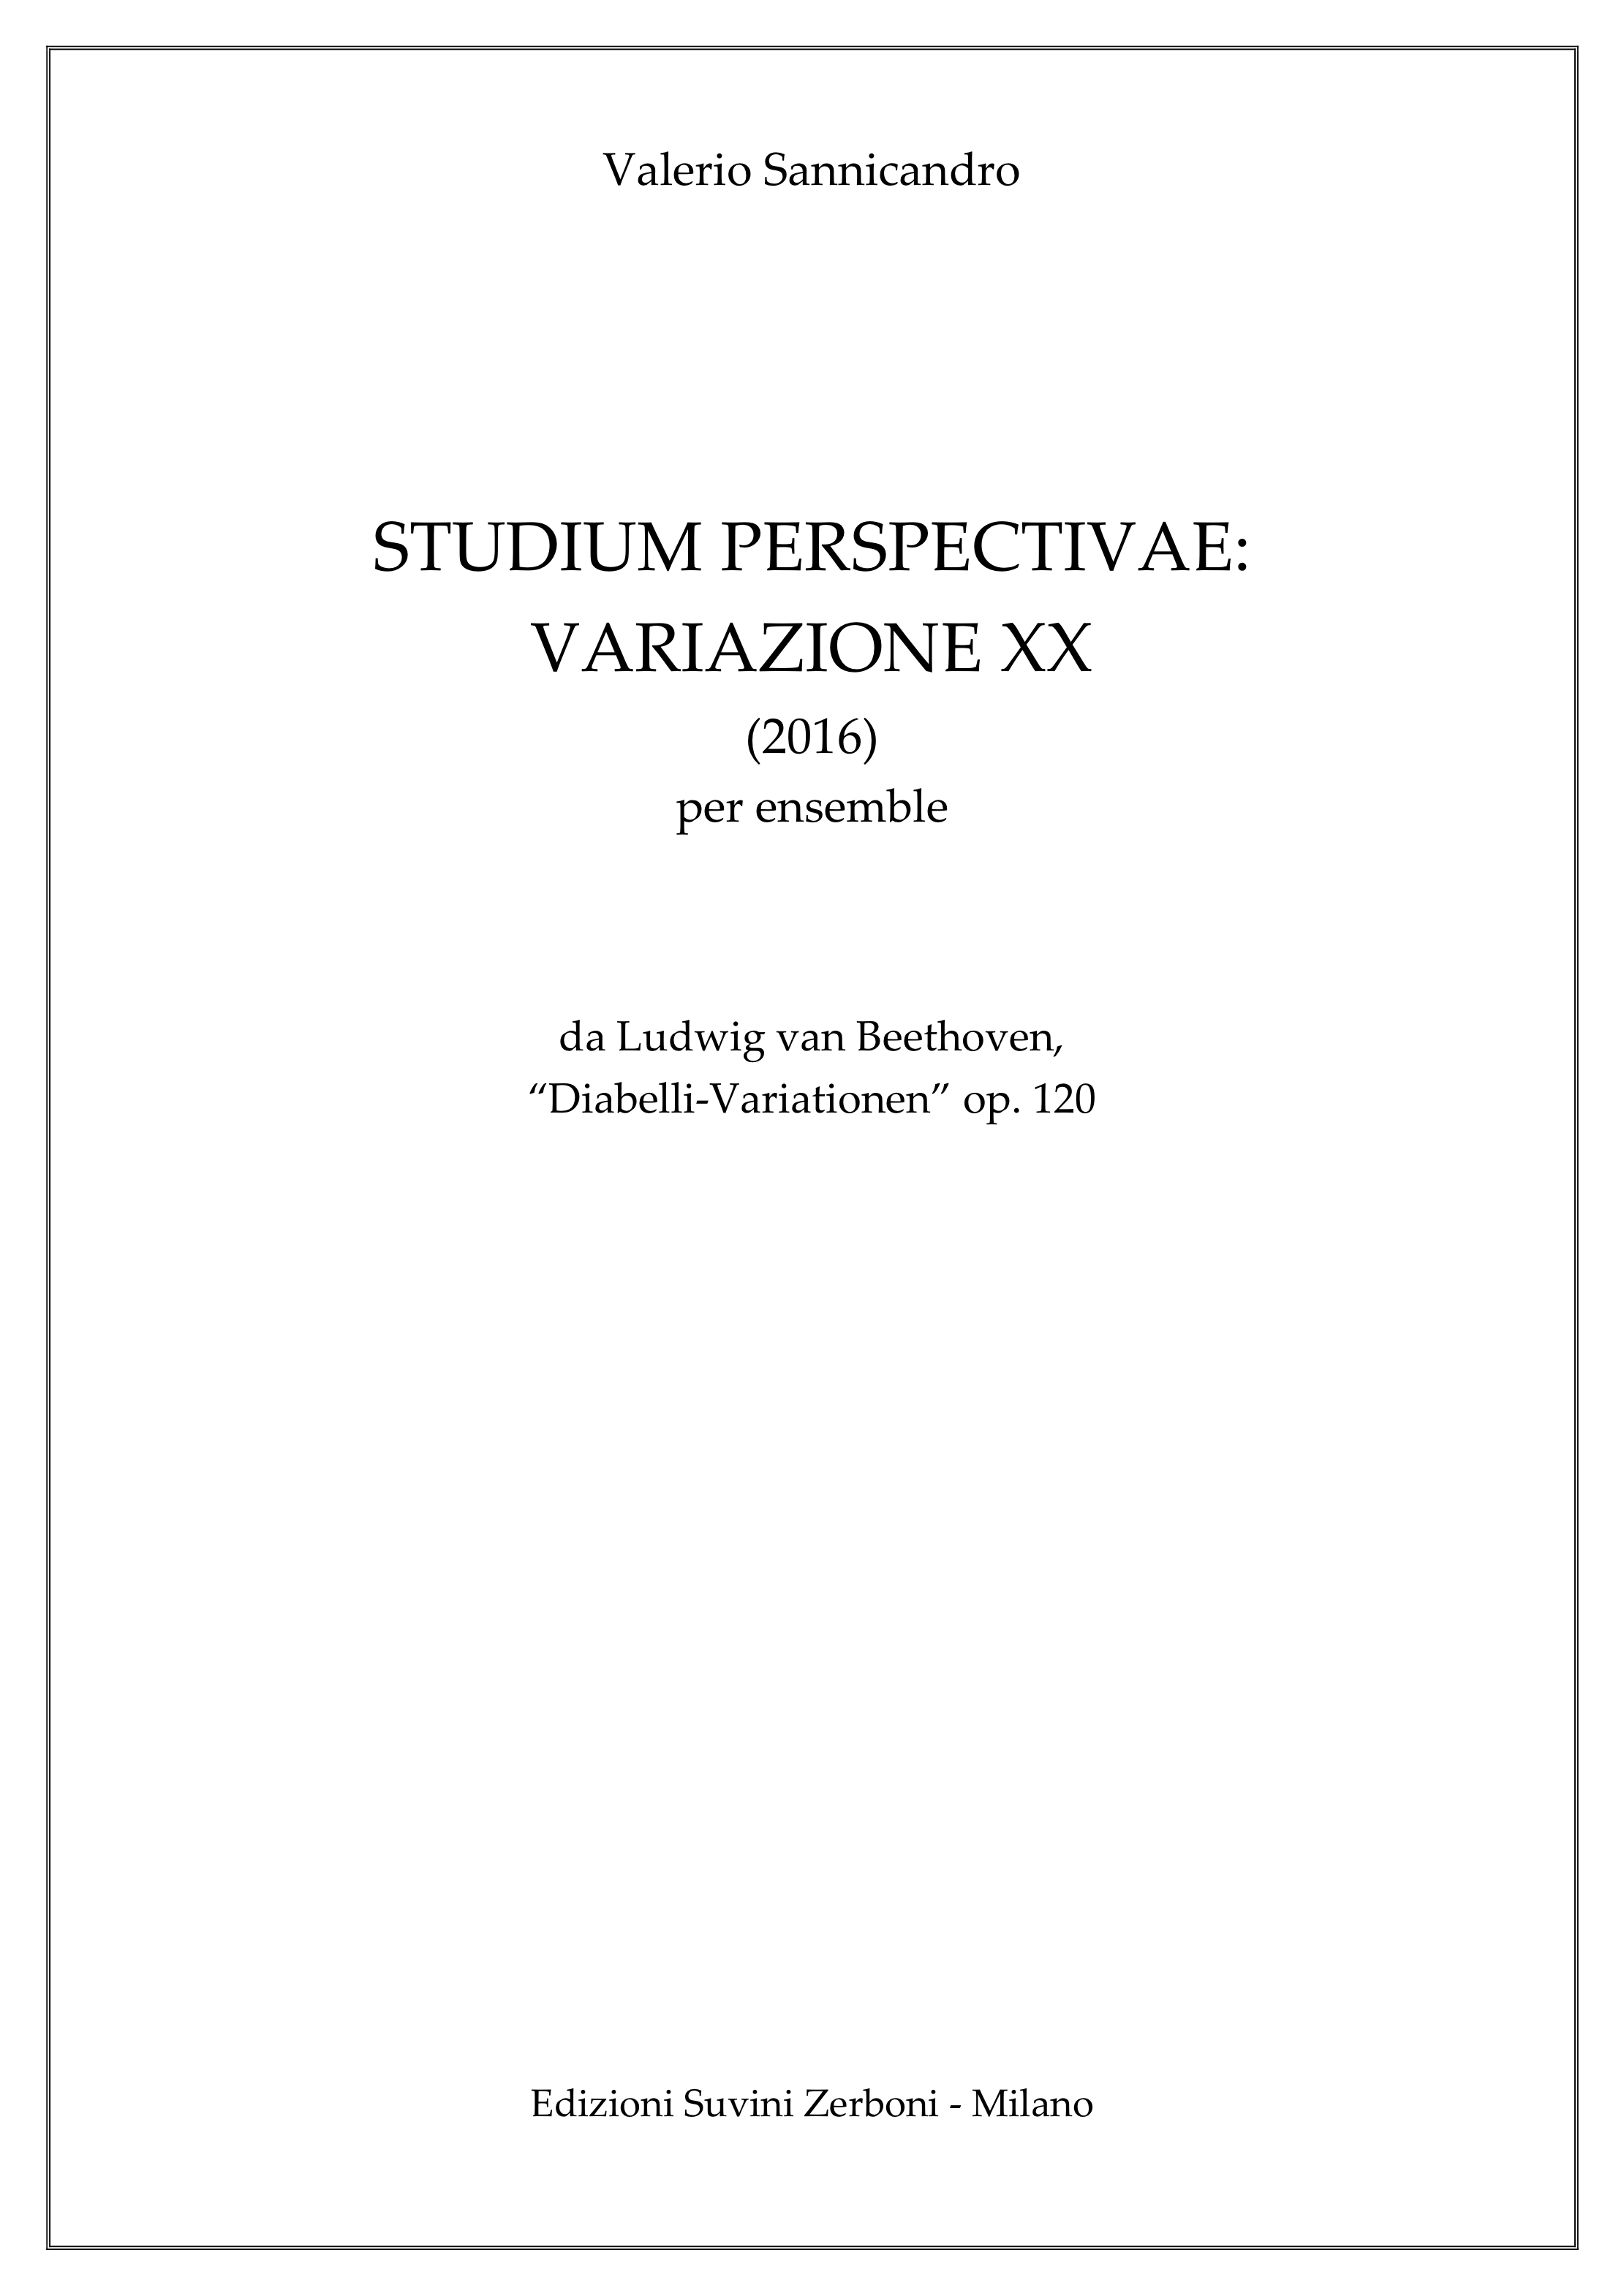 Studium Perspectivae_VariazioneXX_Sannicandro 1